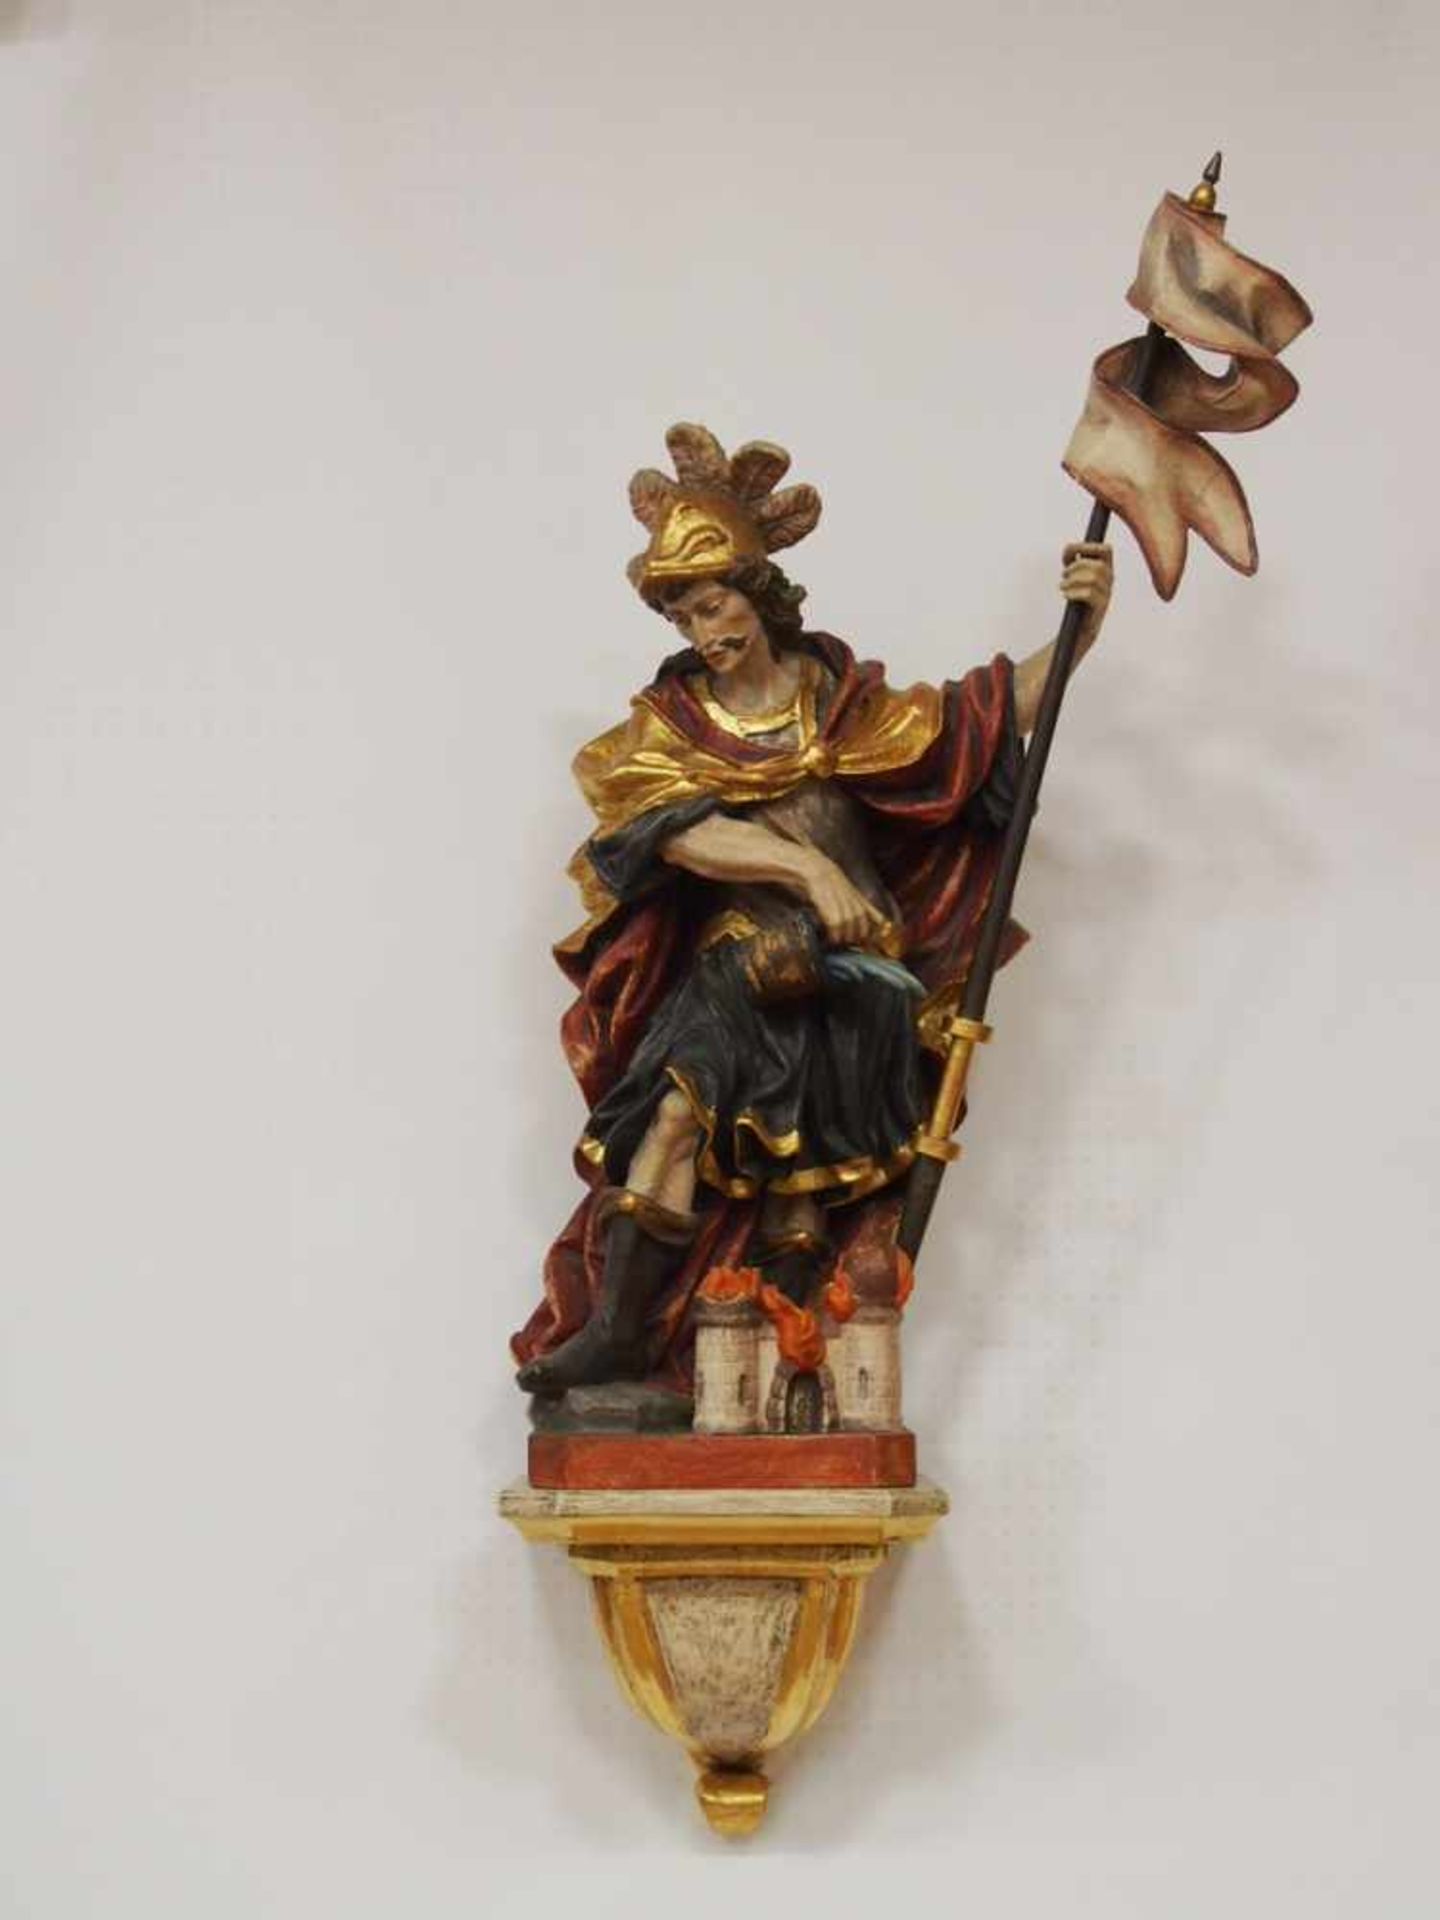 Heiliger FlorianHolz, vollrund geschnitzt, farbig gefasst, versilbert und vergoldet, Alpenländisch